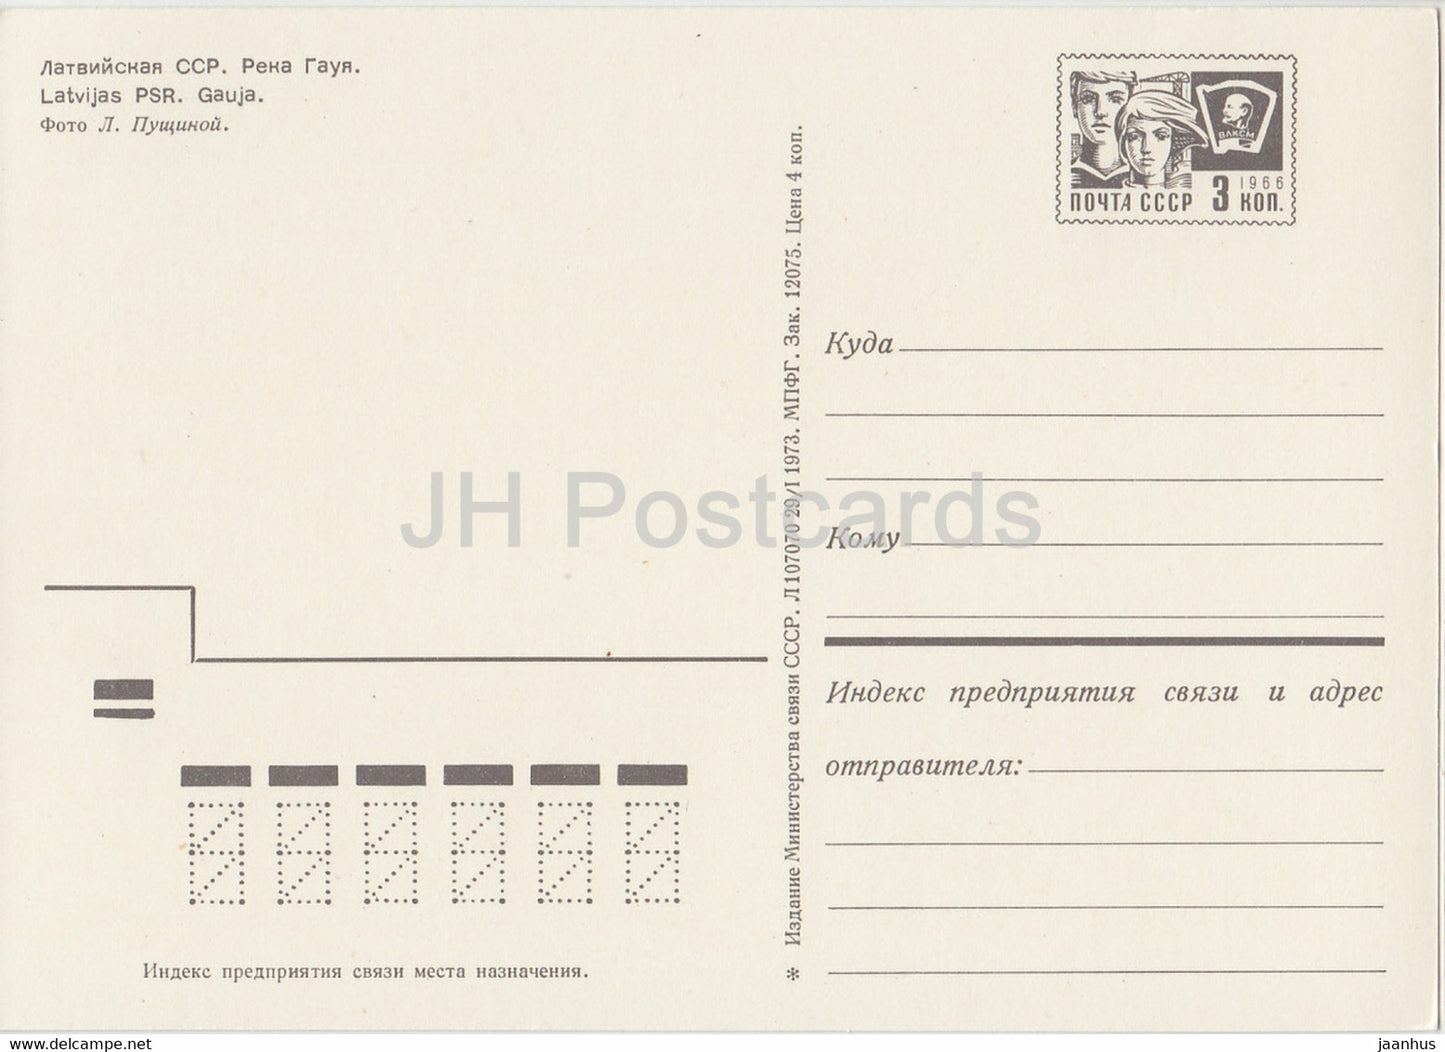 Rivière Gauja - entier postal - 1973 - Lettonie URSS - inutilisé